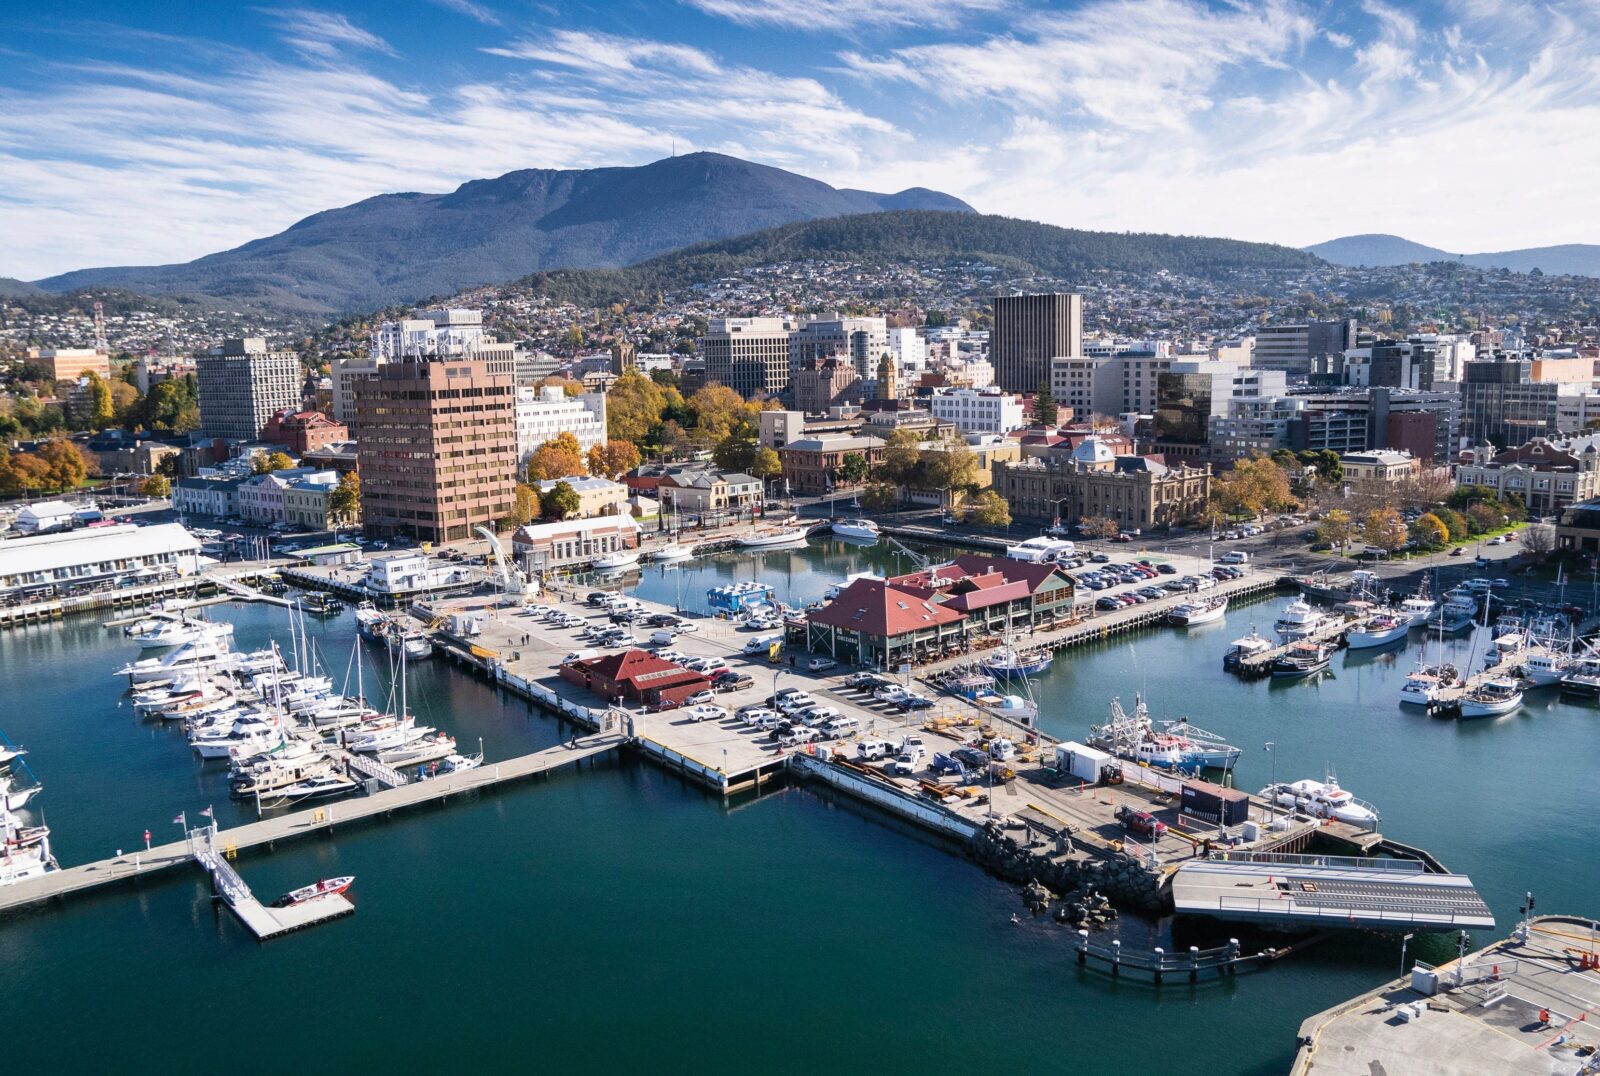 Tasmania/Hobart